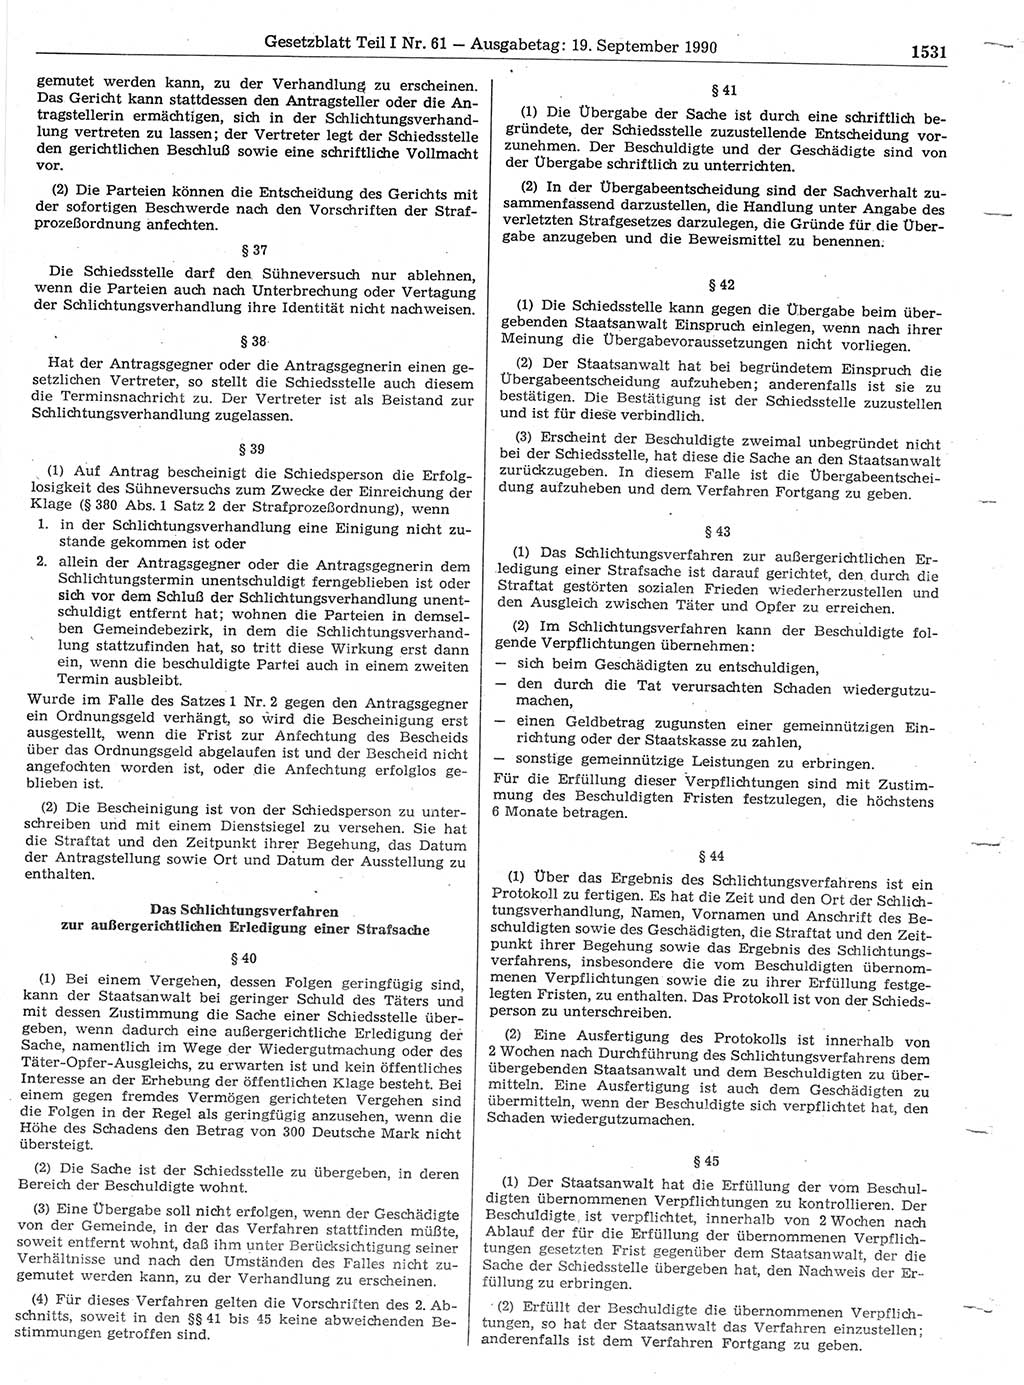 Gesetzblatt (GBl.) der Deutschen Demokratischen Republik (DDR) Teil Ⅰ 1990, Seite 1531 (GBl. DDR Ⅰ 1990, S. 1531)